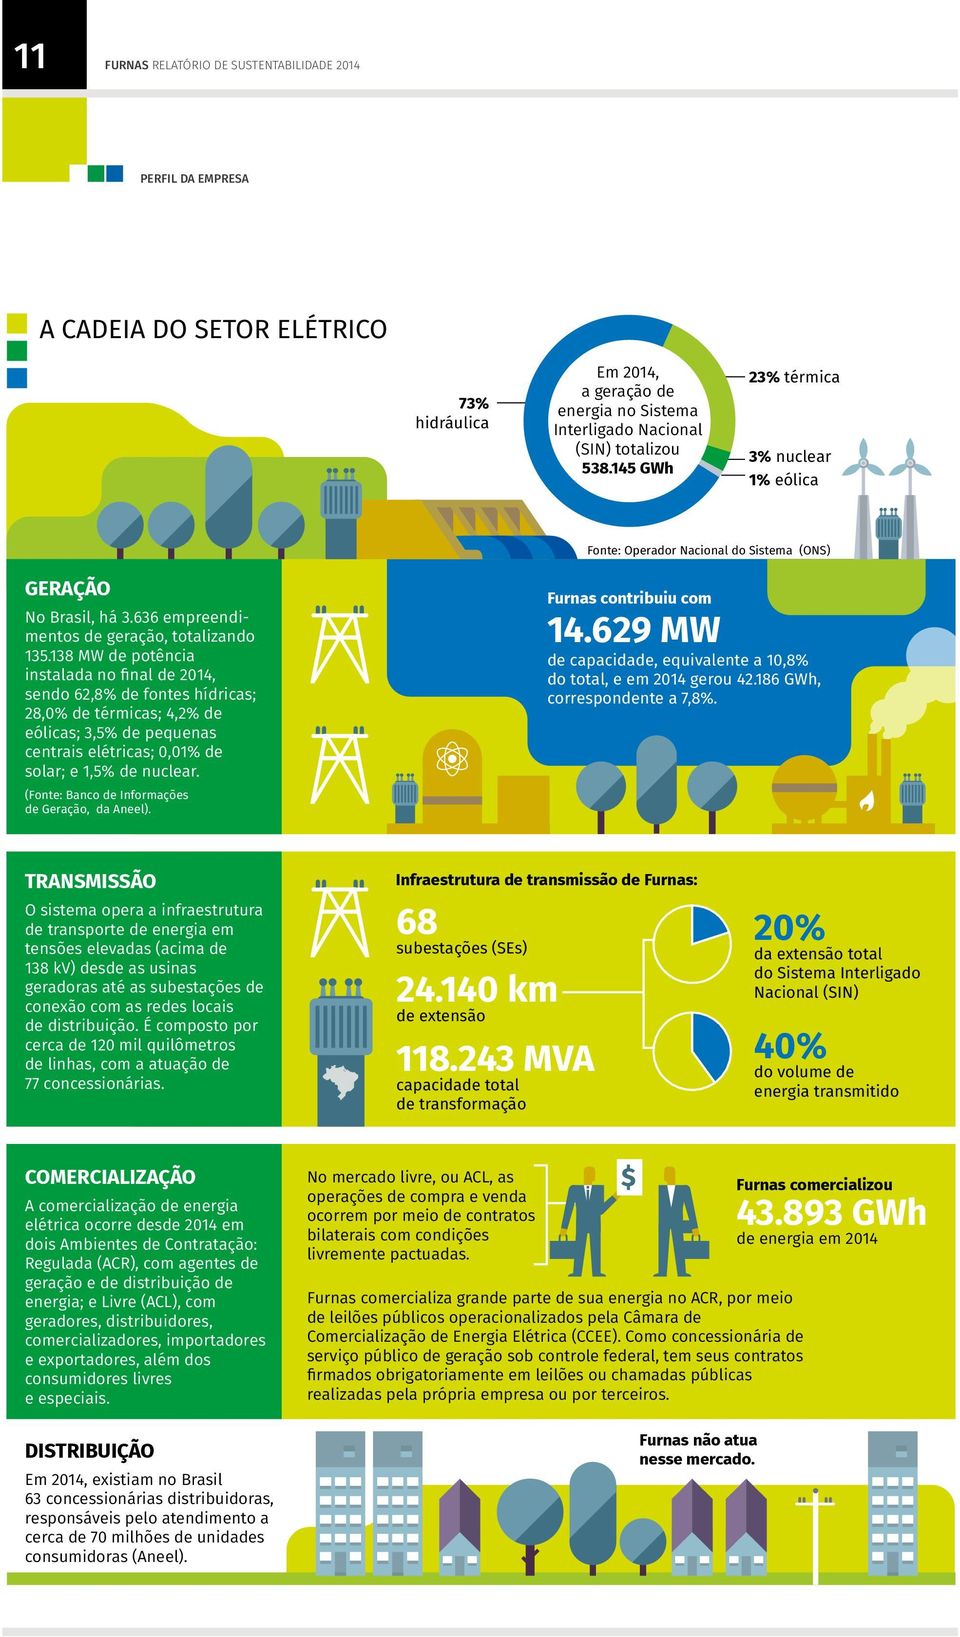 138 MW de potência instalada no final de 2014, sendo 62,8% de fontes hídricas; 28,0% de térmicas; 4,2% de eólicas; 3,5% de pequenas centrais elétricas; 0,01% de solar; e 1,5% de nuclear.